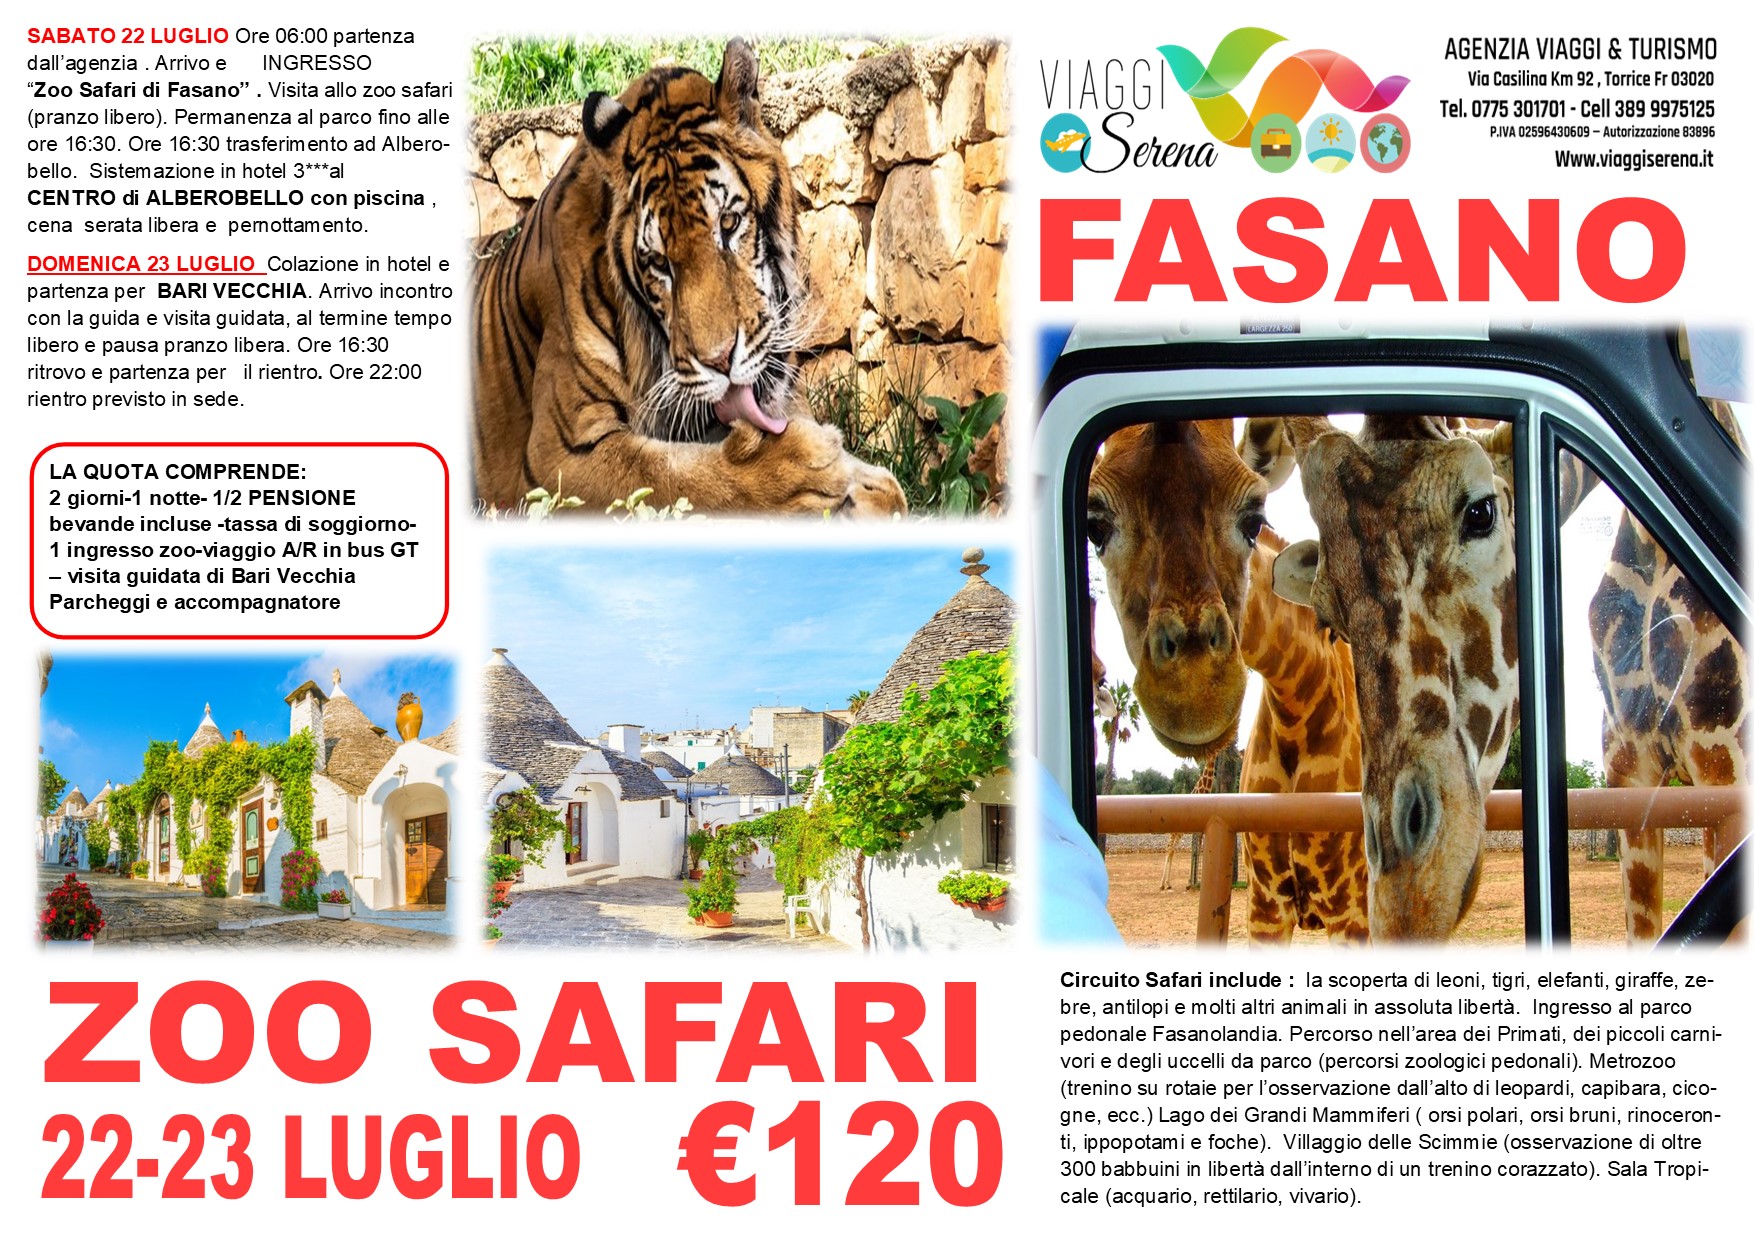 Viaggi di Gruppo: Puglia 2023 Alberobello, Zoo Safari & Bari Vecchia 22-23 Luglio € 120,00